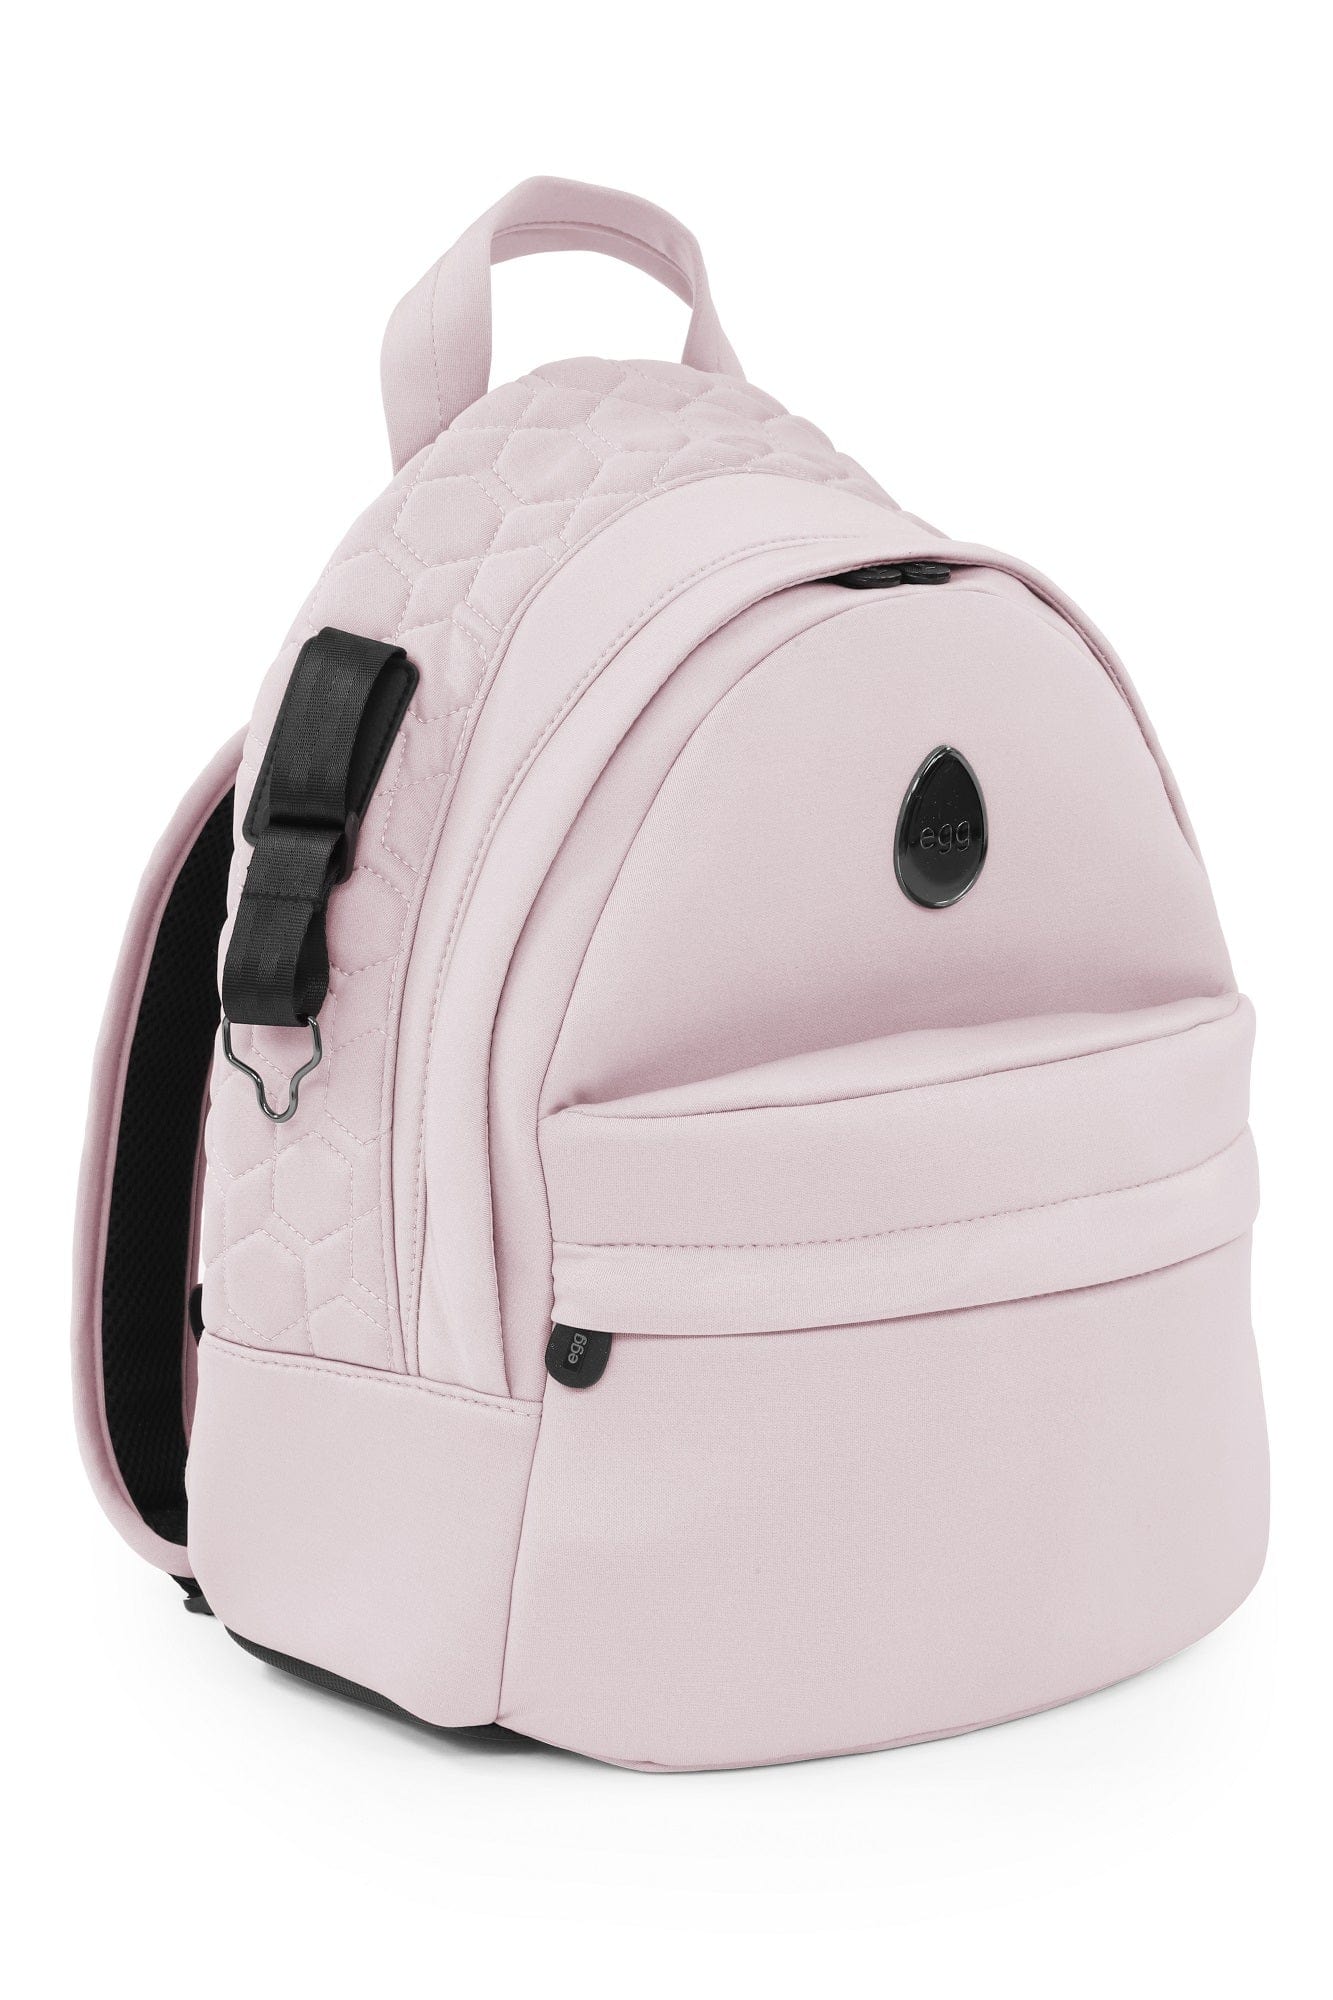 Egg 2 Pram Stroller Backpack Changing Bag- Cobalt – UK Baby Centre